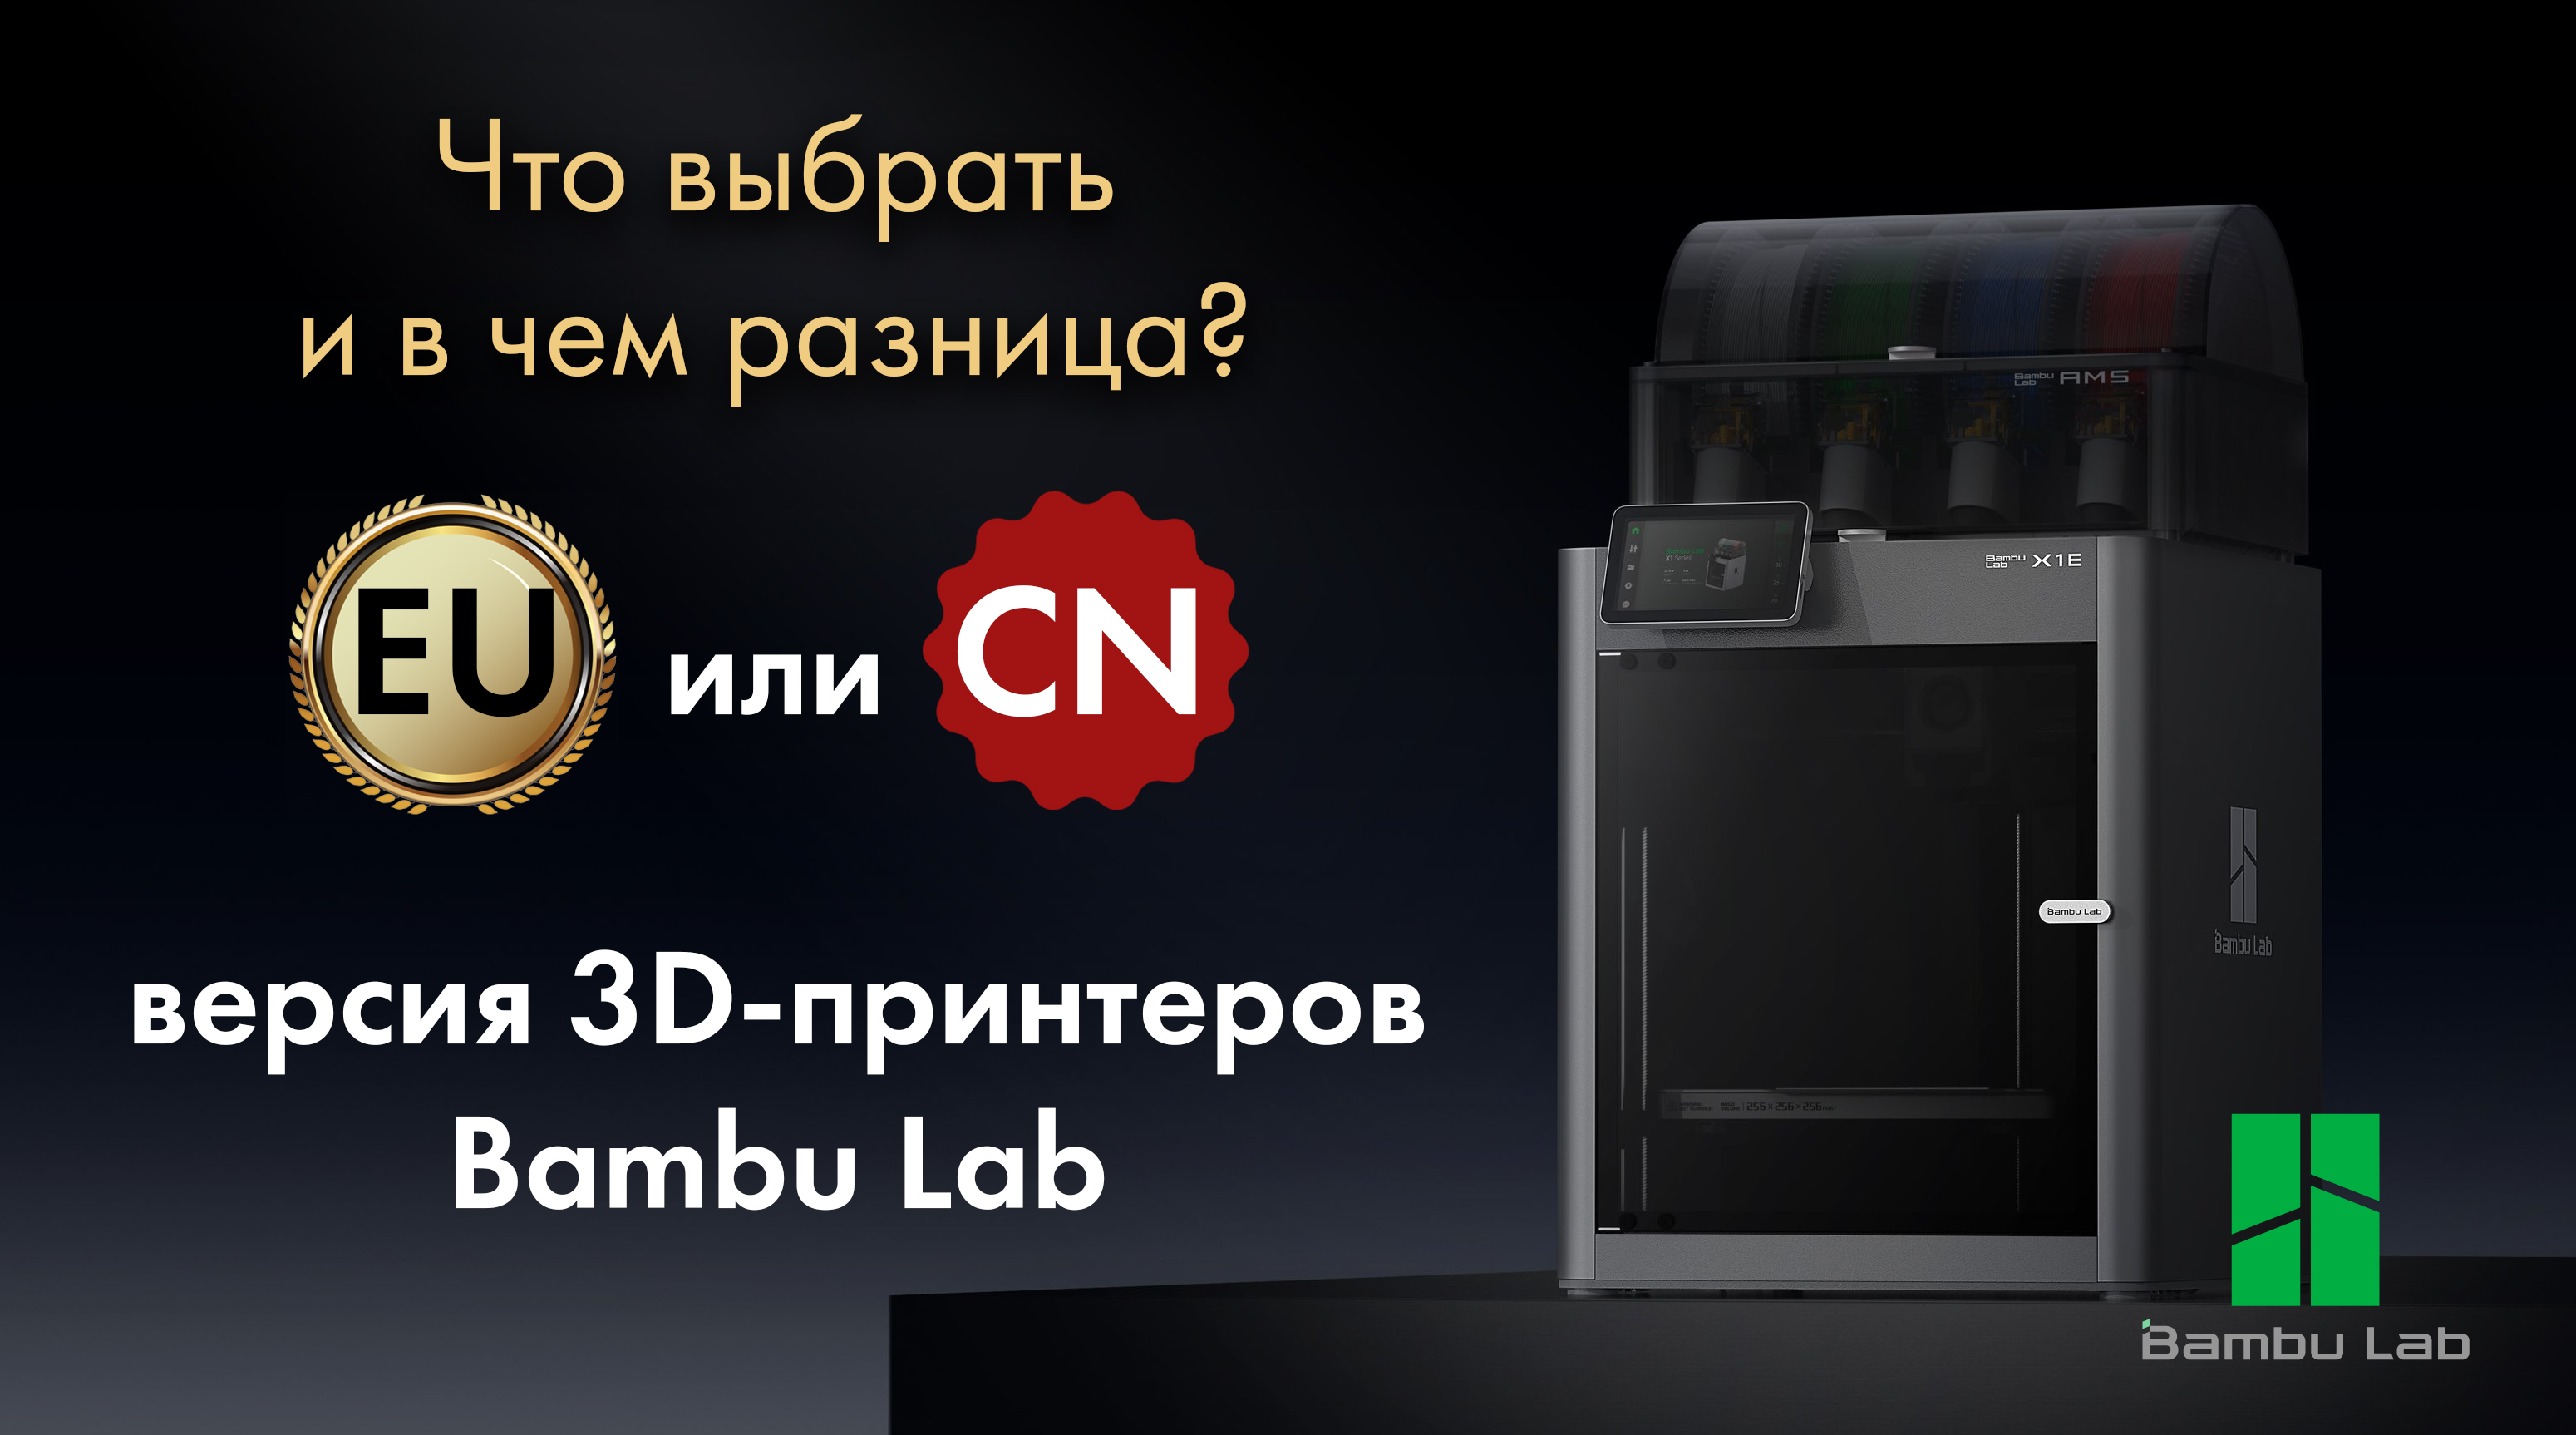 Отличия между EU и CN версиями 3D-принтеров Bambu Lab